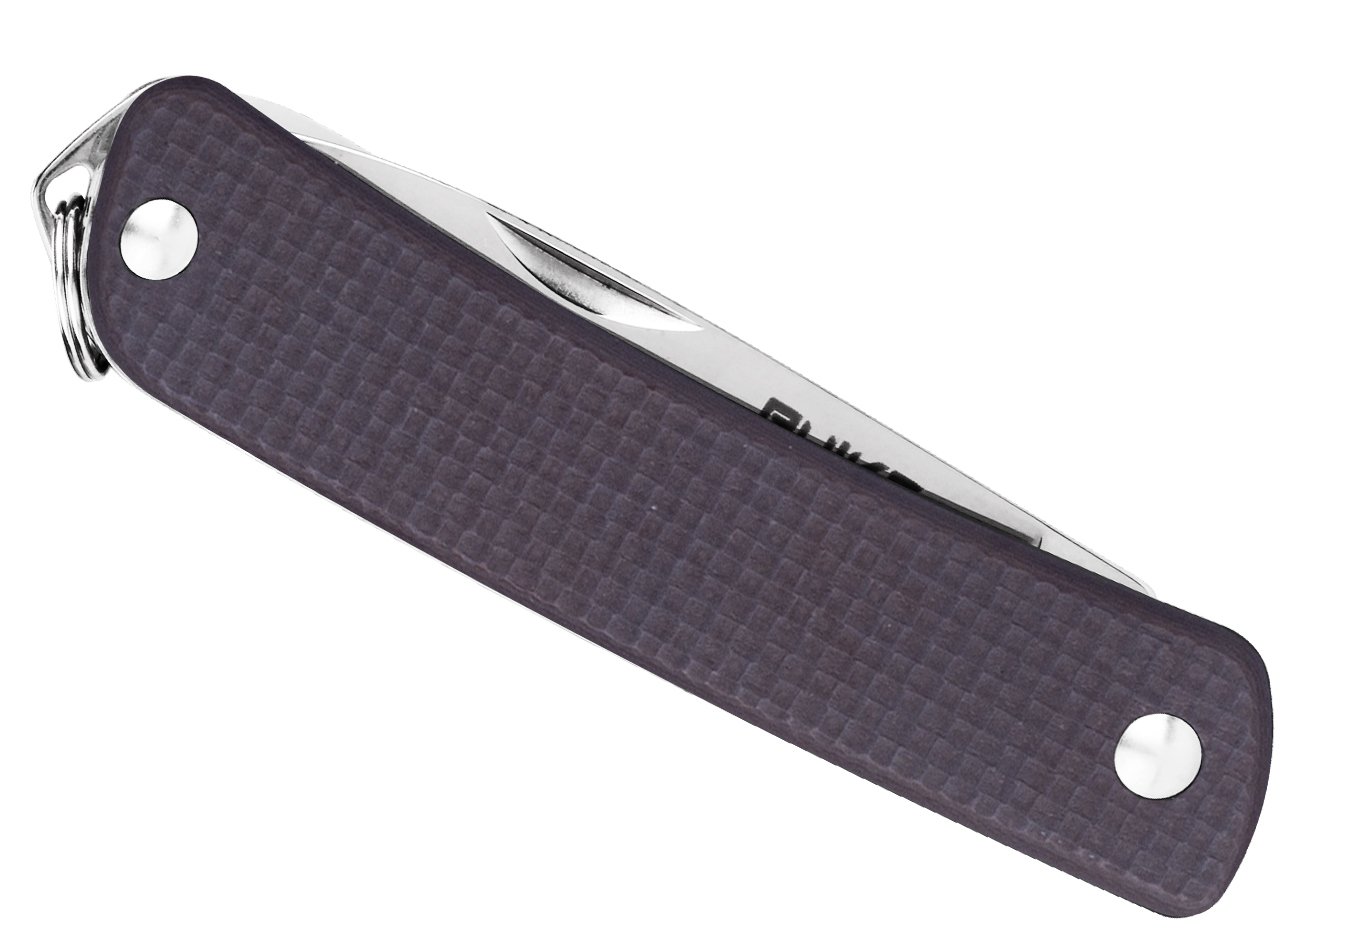 Produktbild von Ruike S21-N braun - Taschenmesser, Sandvik 12C27 Edelstahl, 5 Funktionen